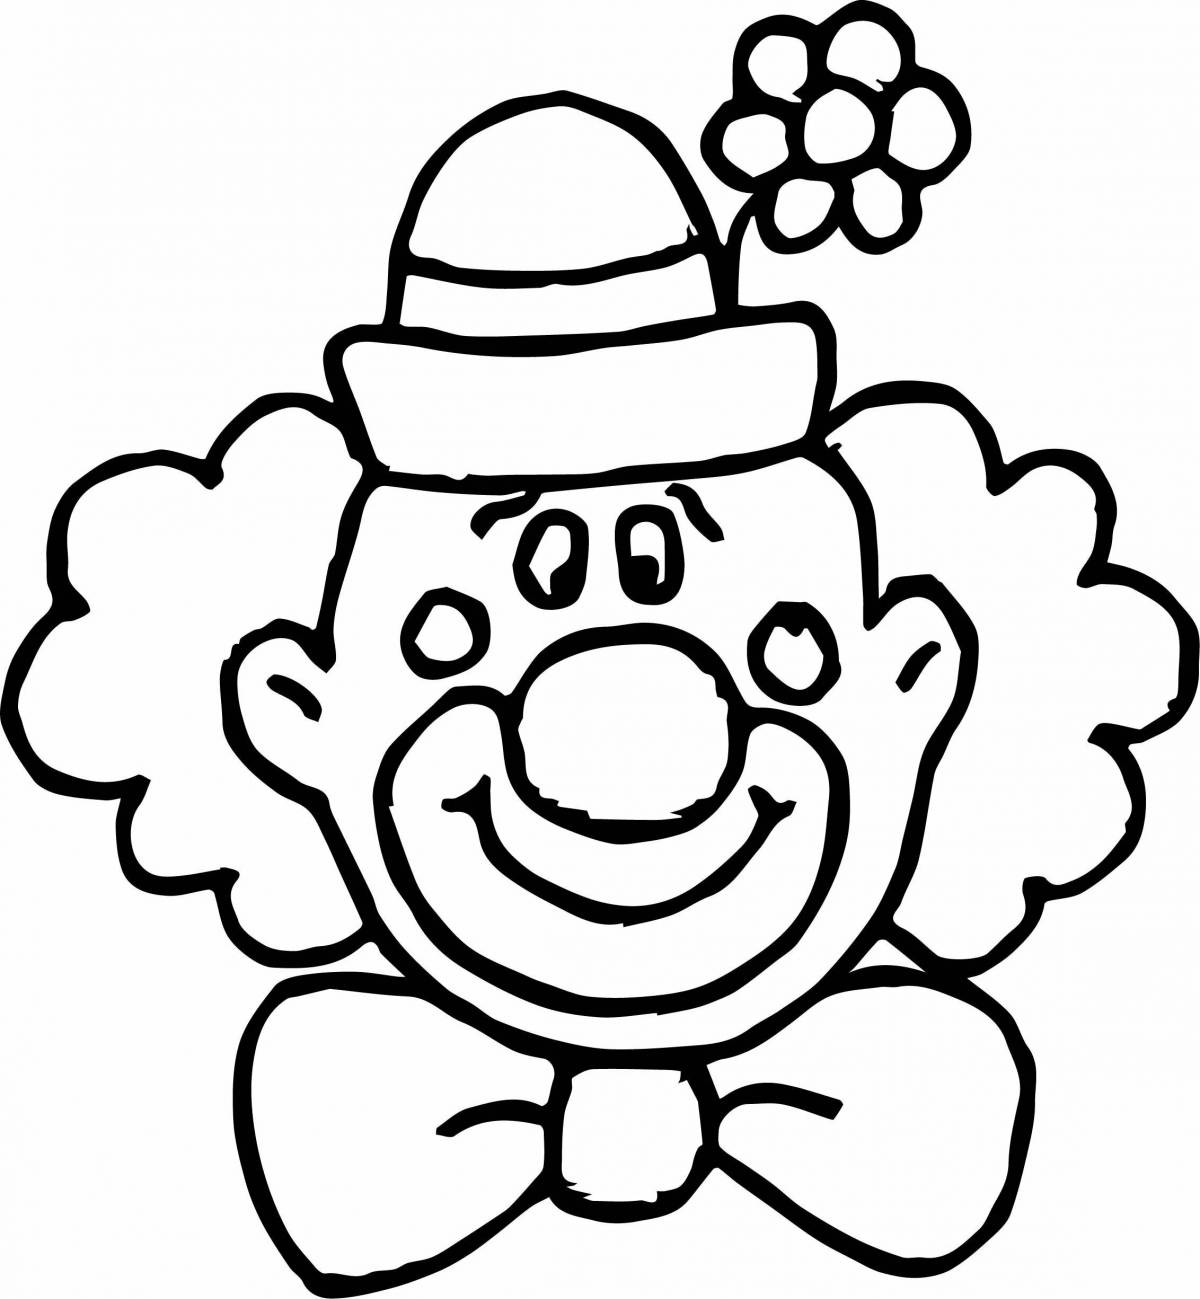 Юмористический рисунок клоуна для детей